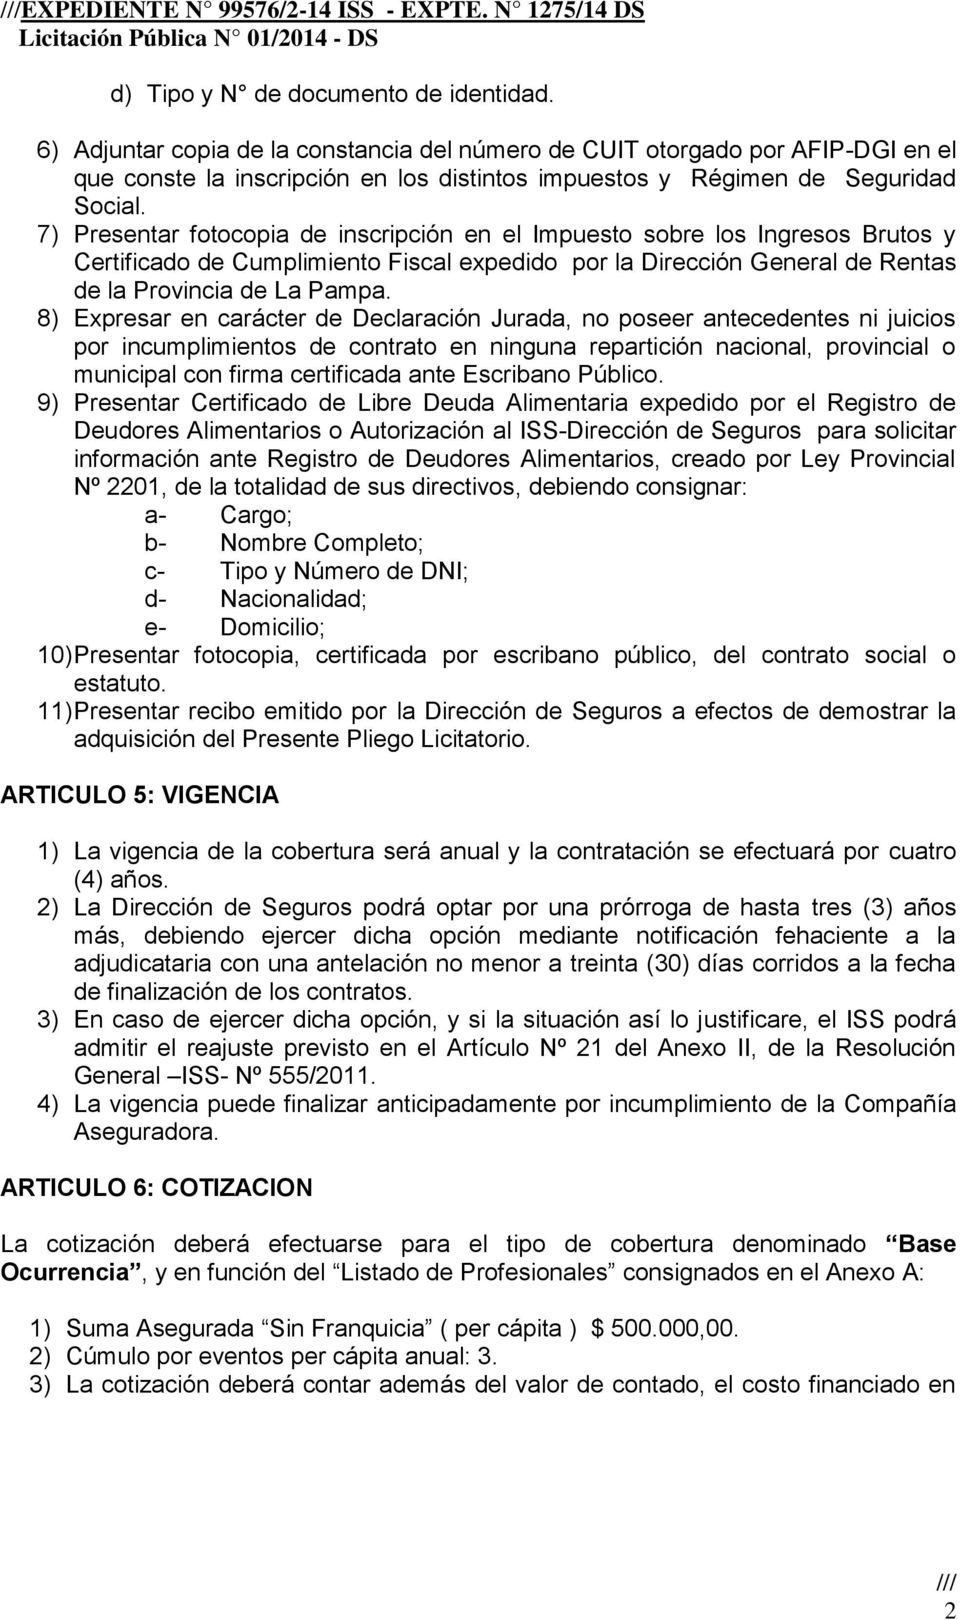 7) Presentar fotocopia de inscripción en el Impuesto sobre los Ingresos Brutos y Certificado de Cumplimiento Fiscal expedido por la Dirección General de Rentas de la Provincia de La Pampa.